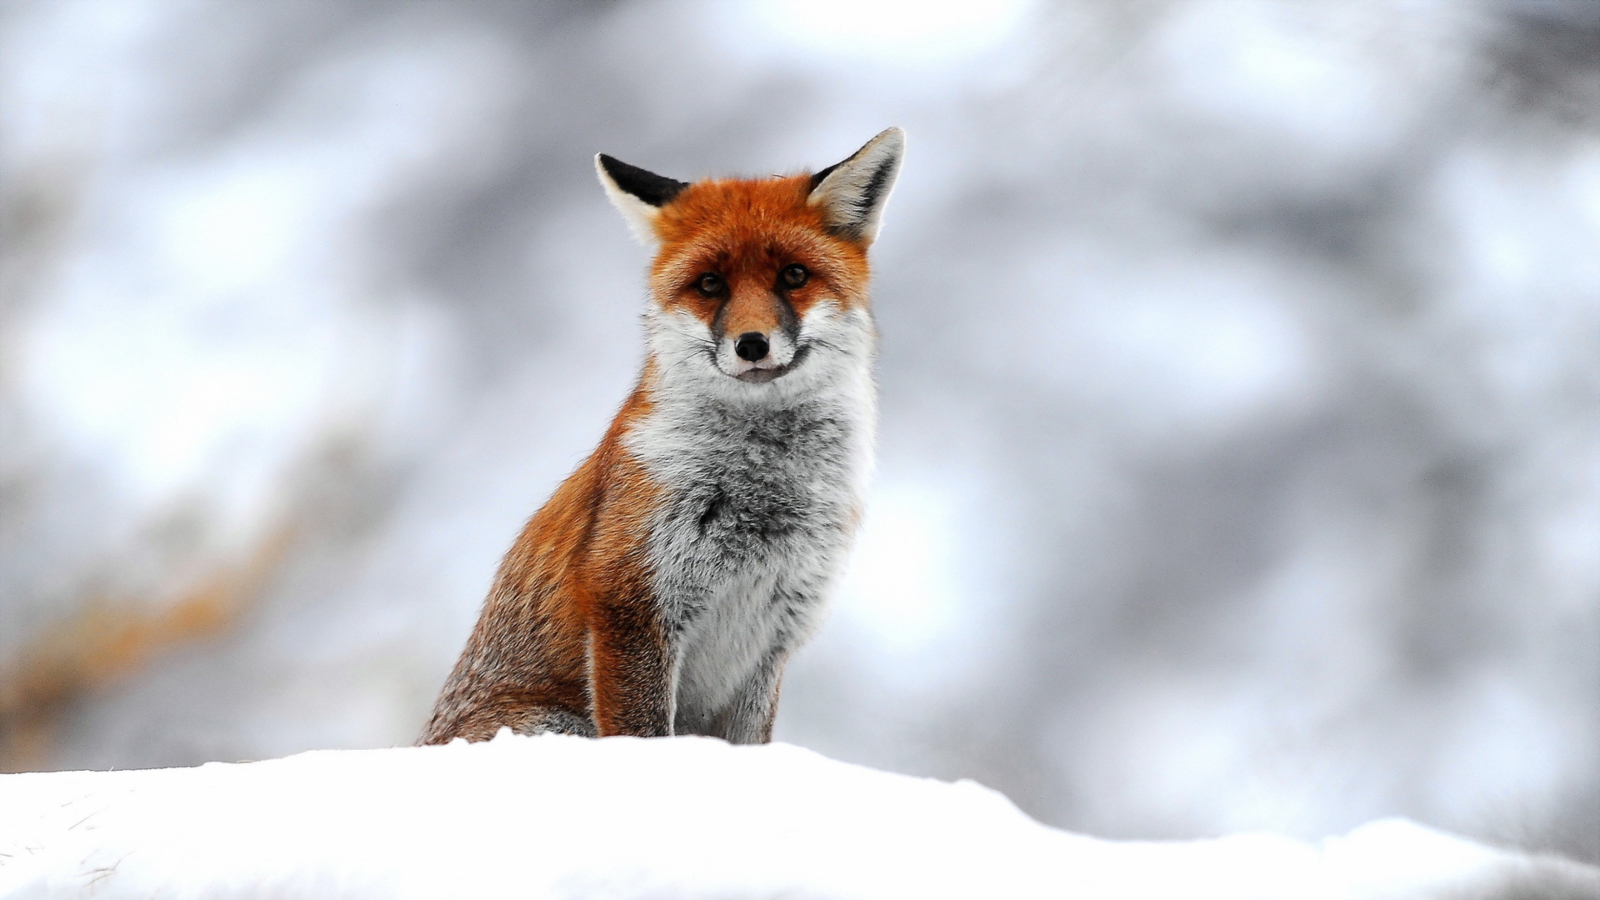 Обои Cute Fox In Winter 1600x900